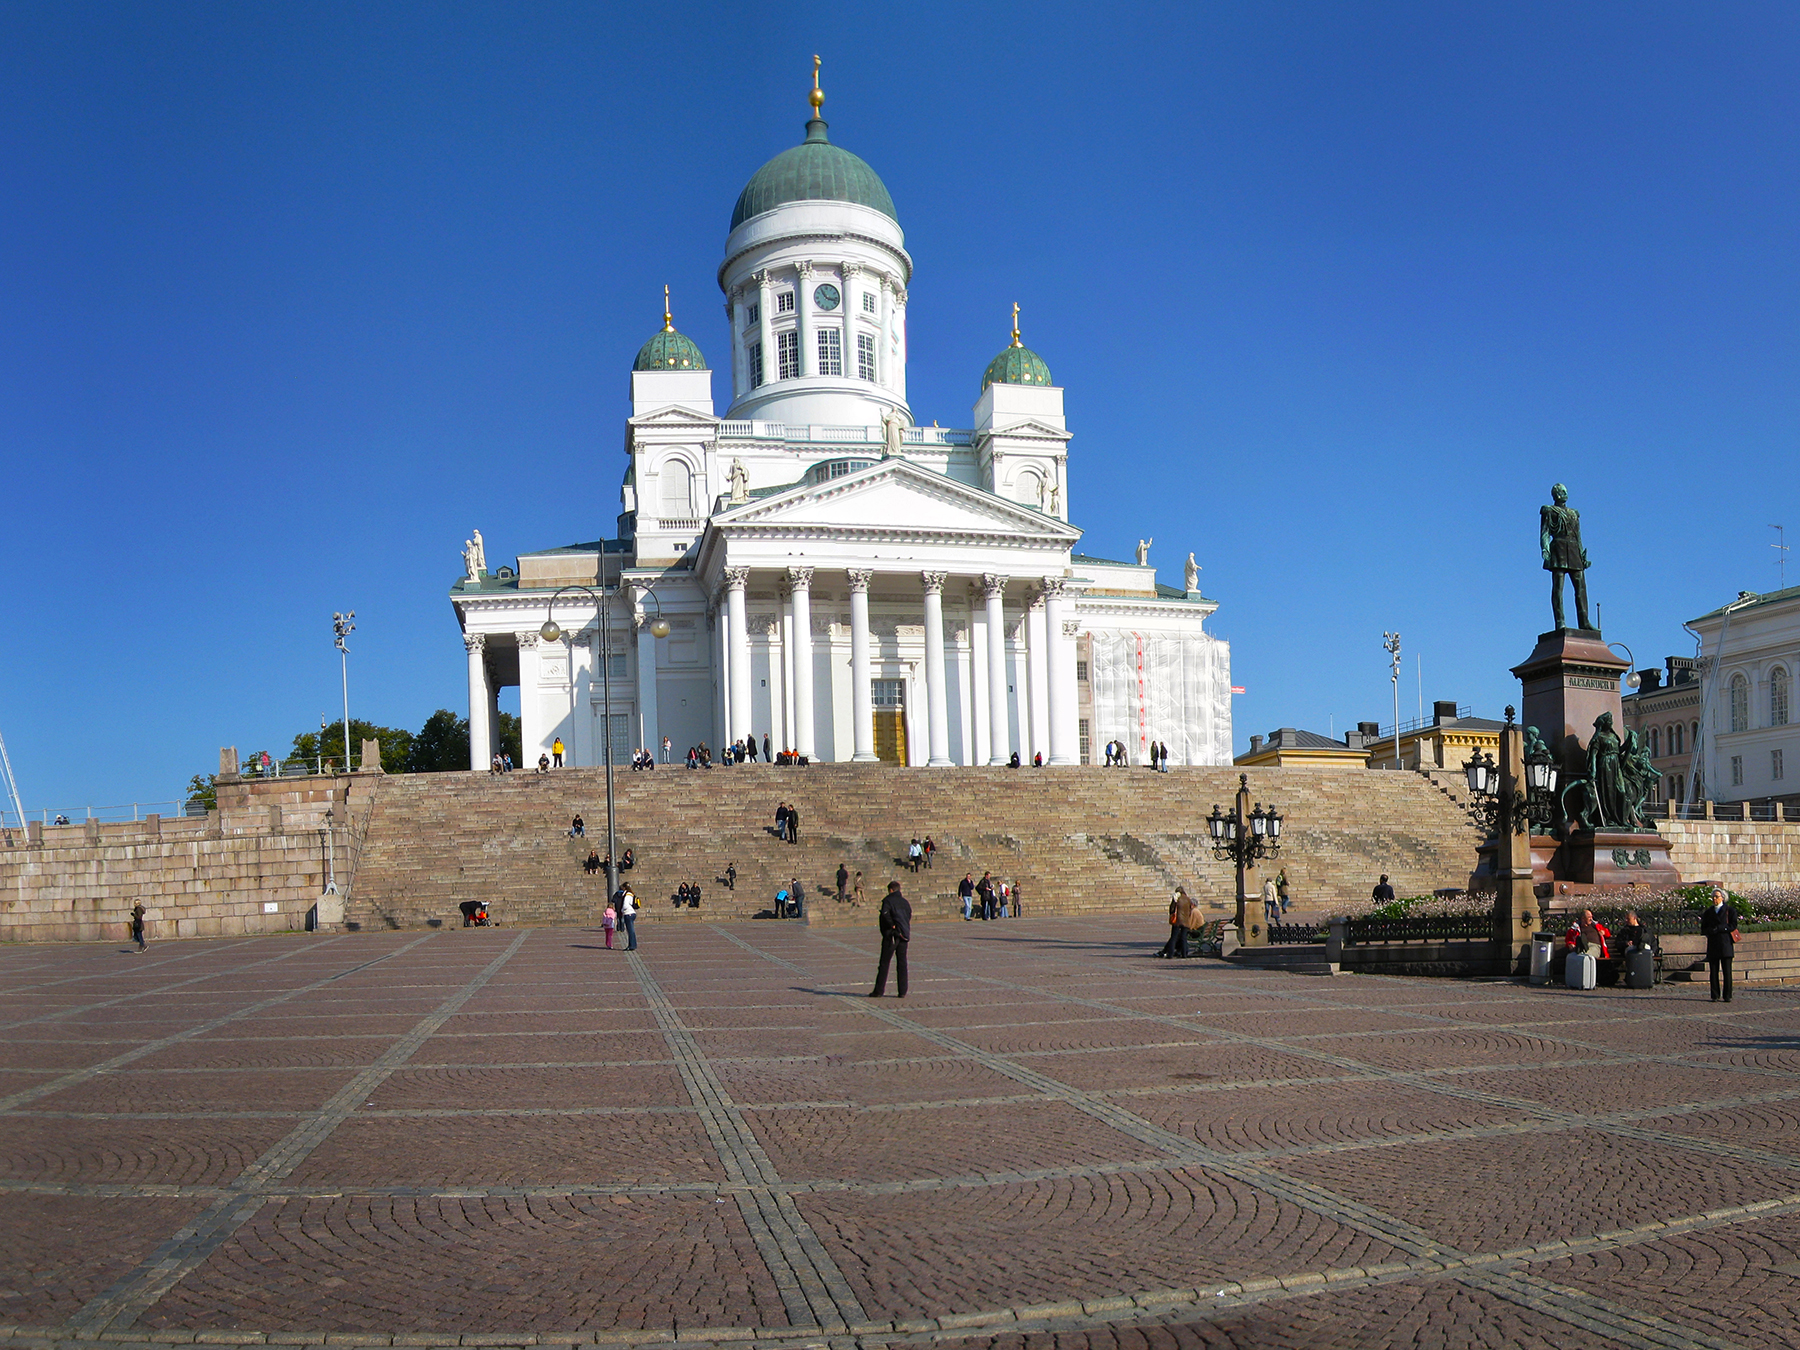 Quảng trường Thượng viện Helsinki - Helsinki Senate Square | Yeudulich